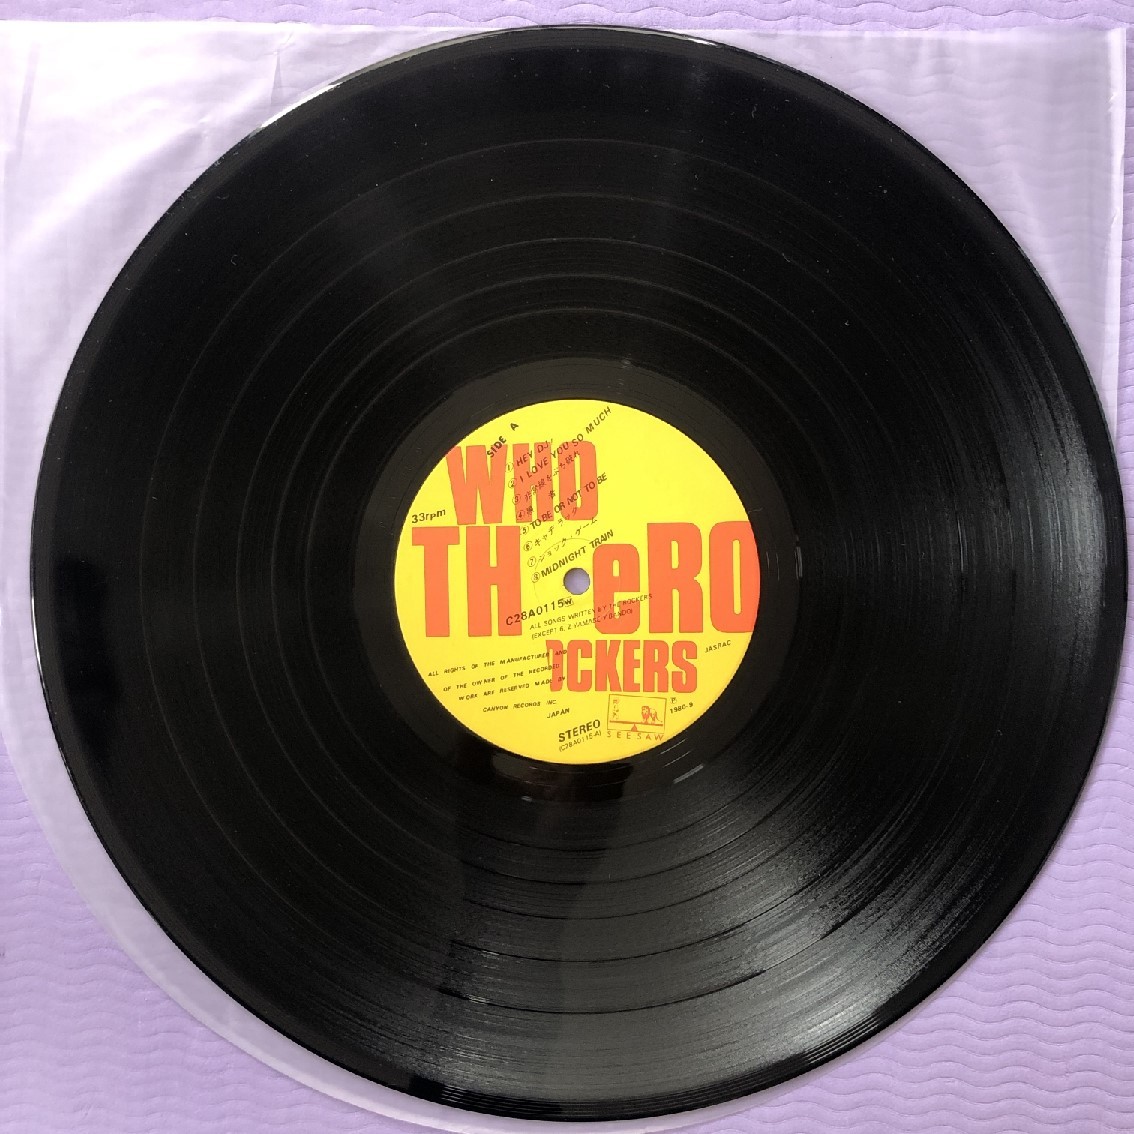 美ジャケ レア盤 ザ・ロッカーズ TH eROCKERS 1980年 LPレコード フー・ザ・ロッカーズ Who TH eROCKERS オリジナル盤 帯付 Japanese punk_画像8